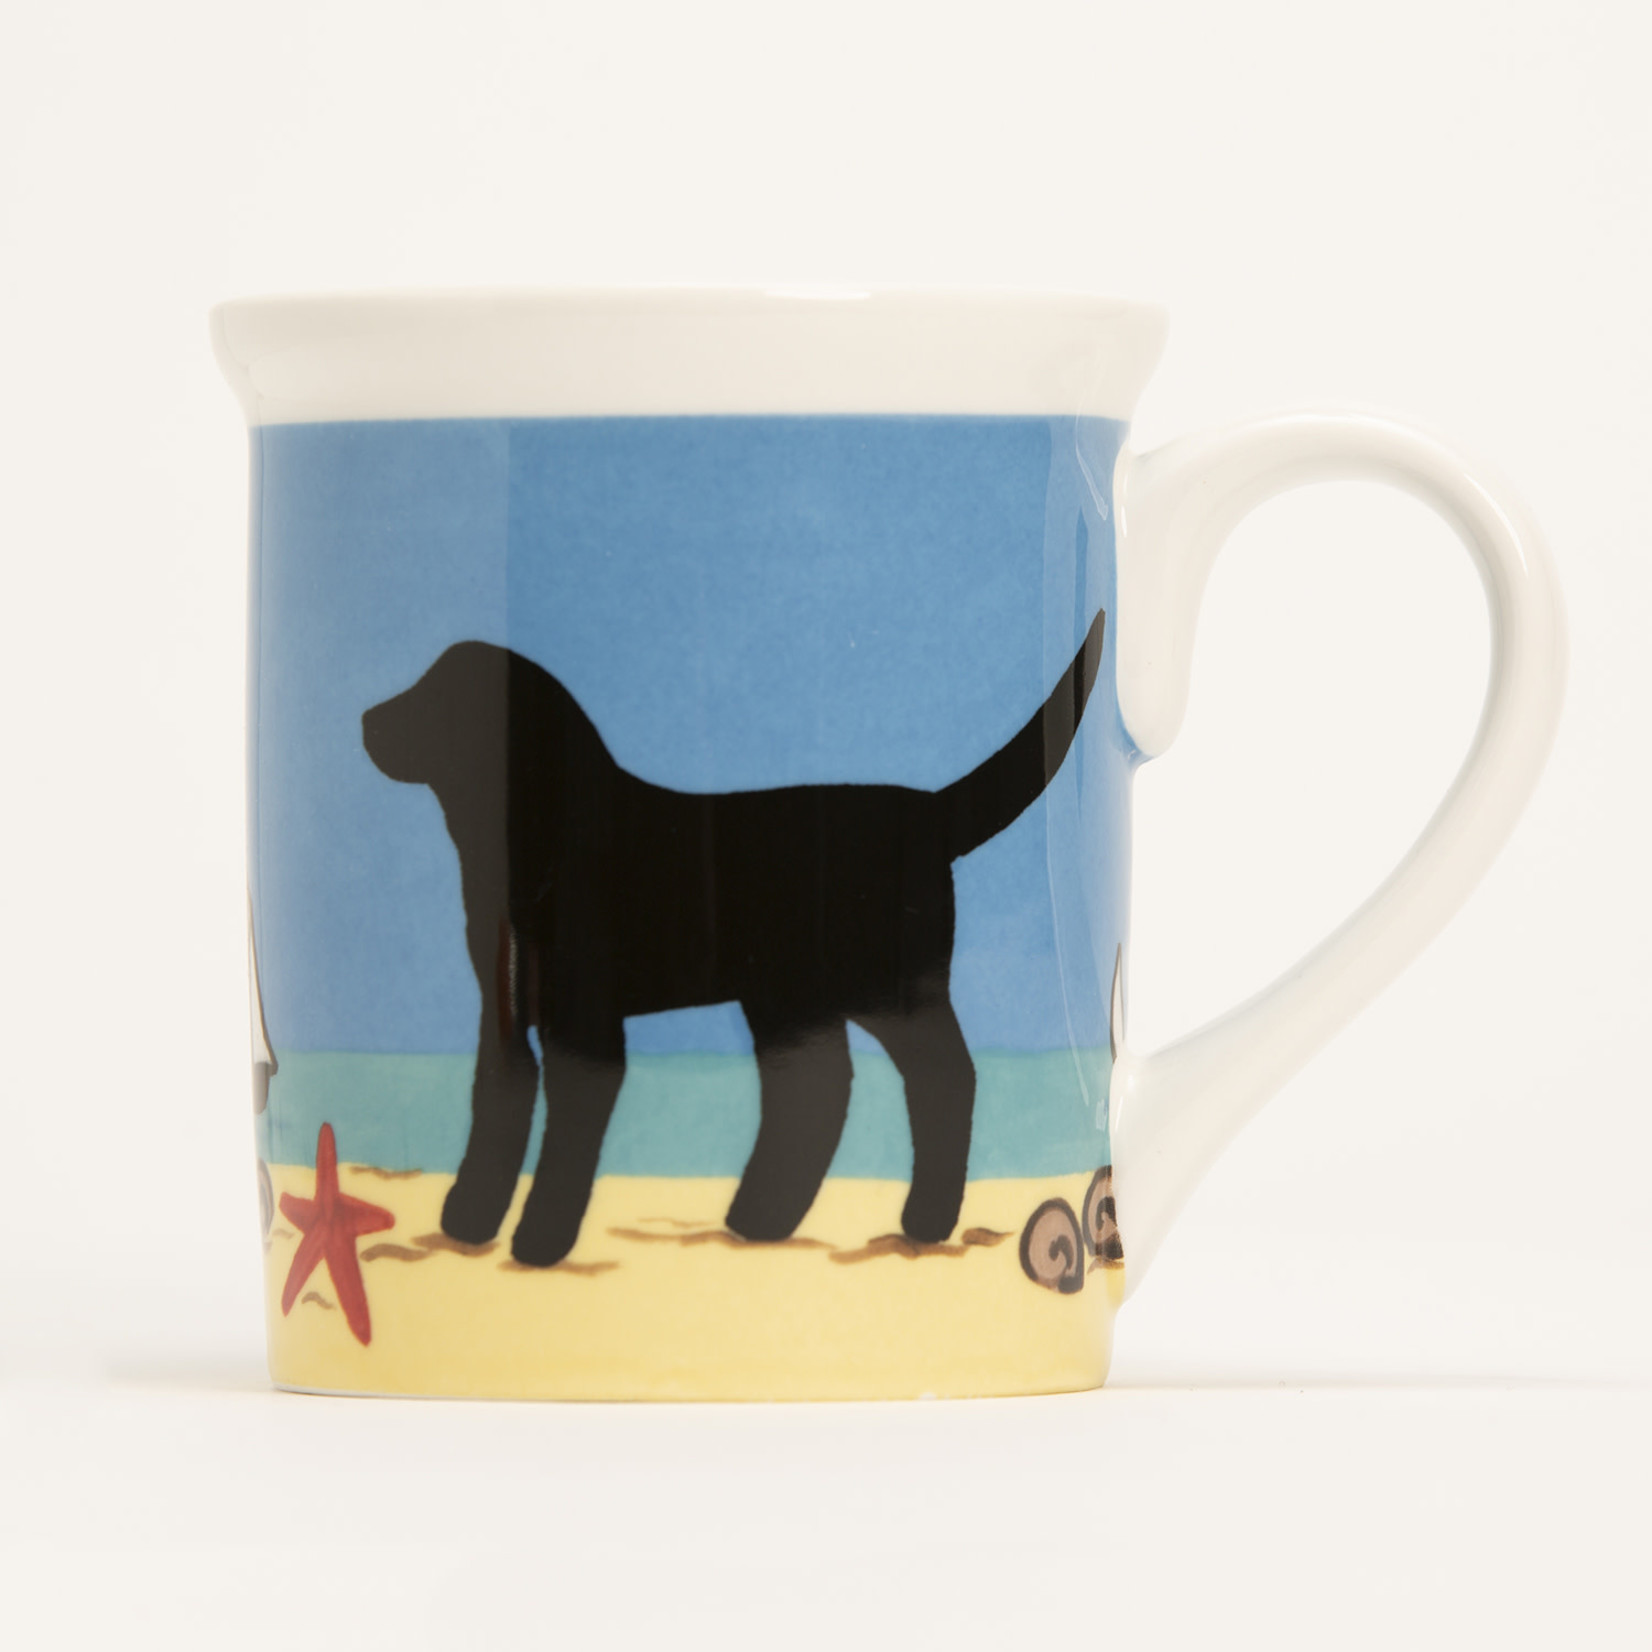 4.25" Mug - Beach Dog Black